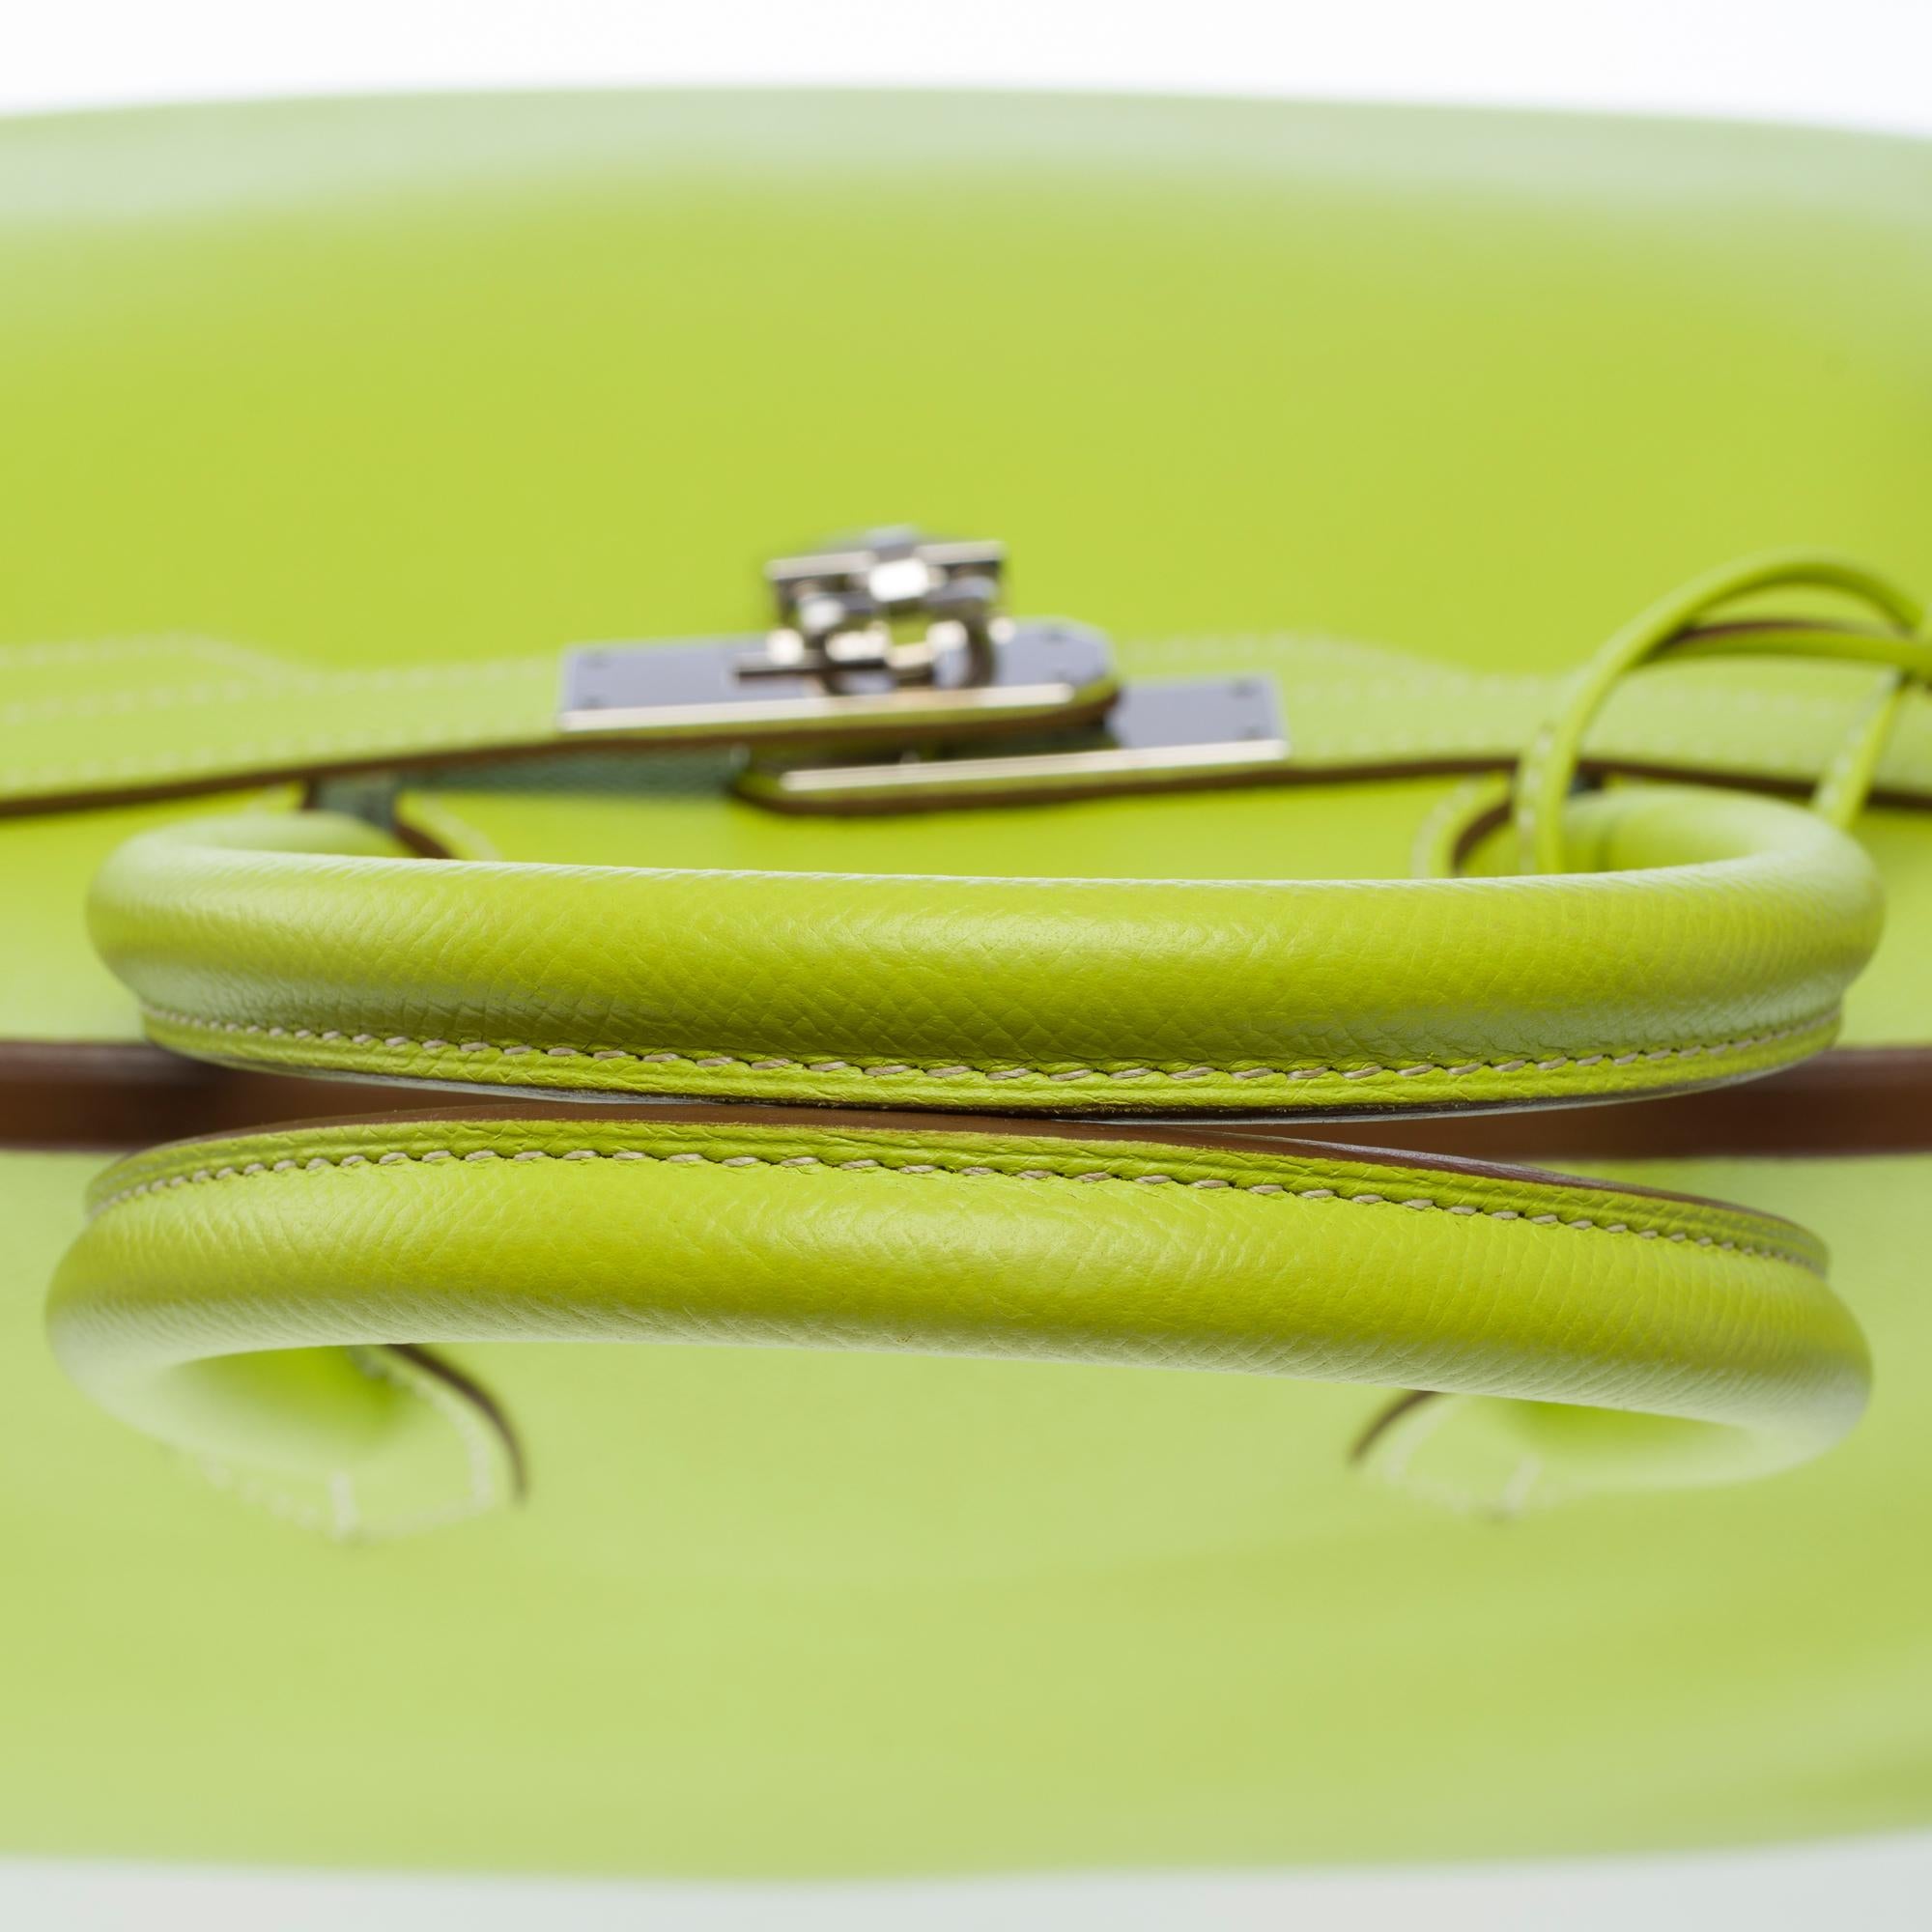 Candy limited edition Hermès Birkin 35 handbag in Kiwi Green epsom leather, SHW 6